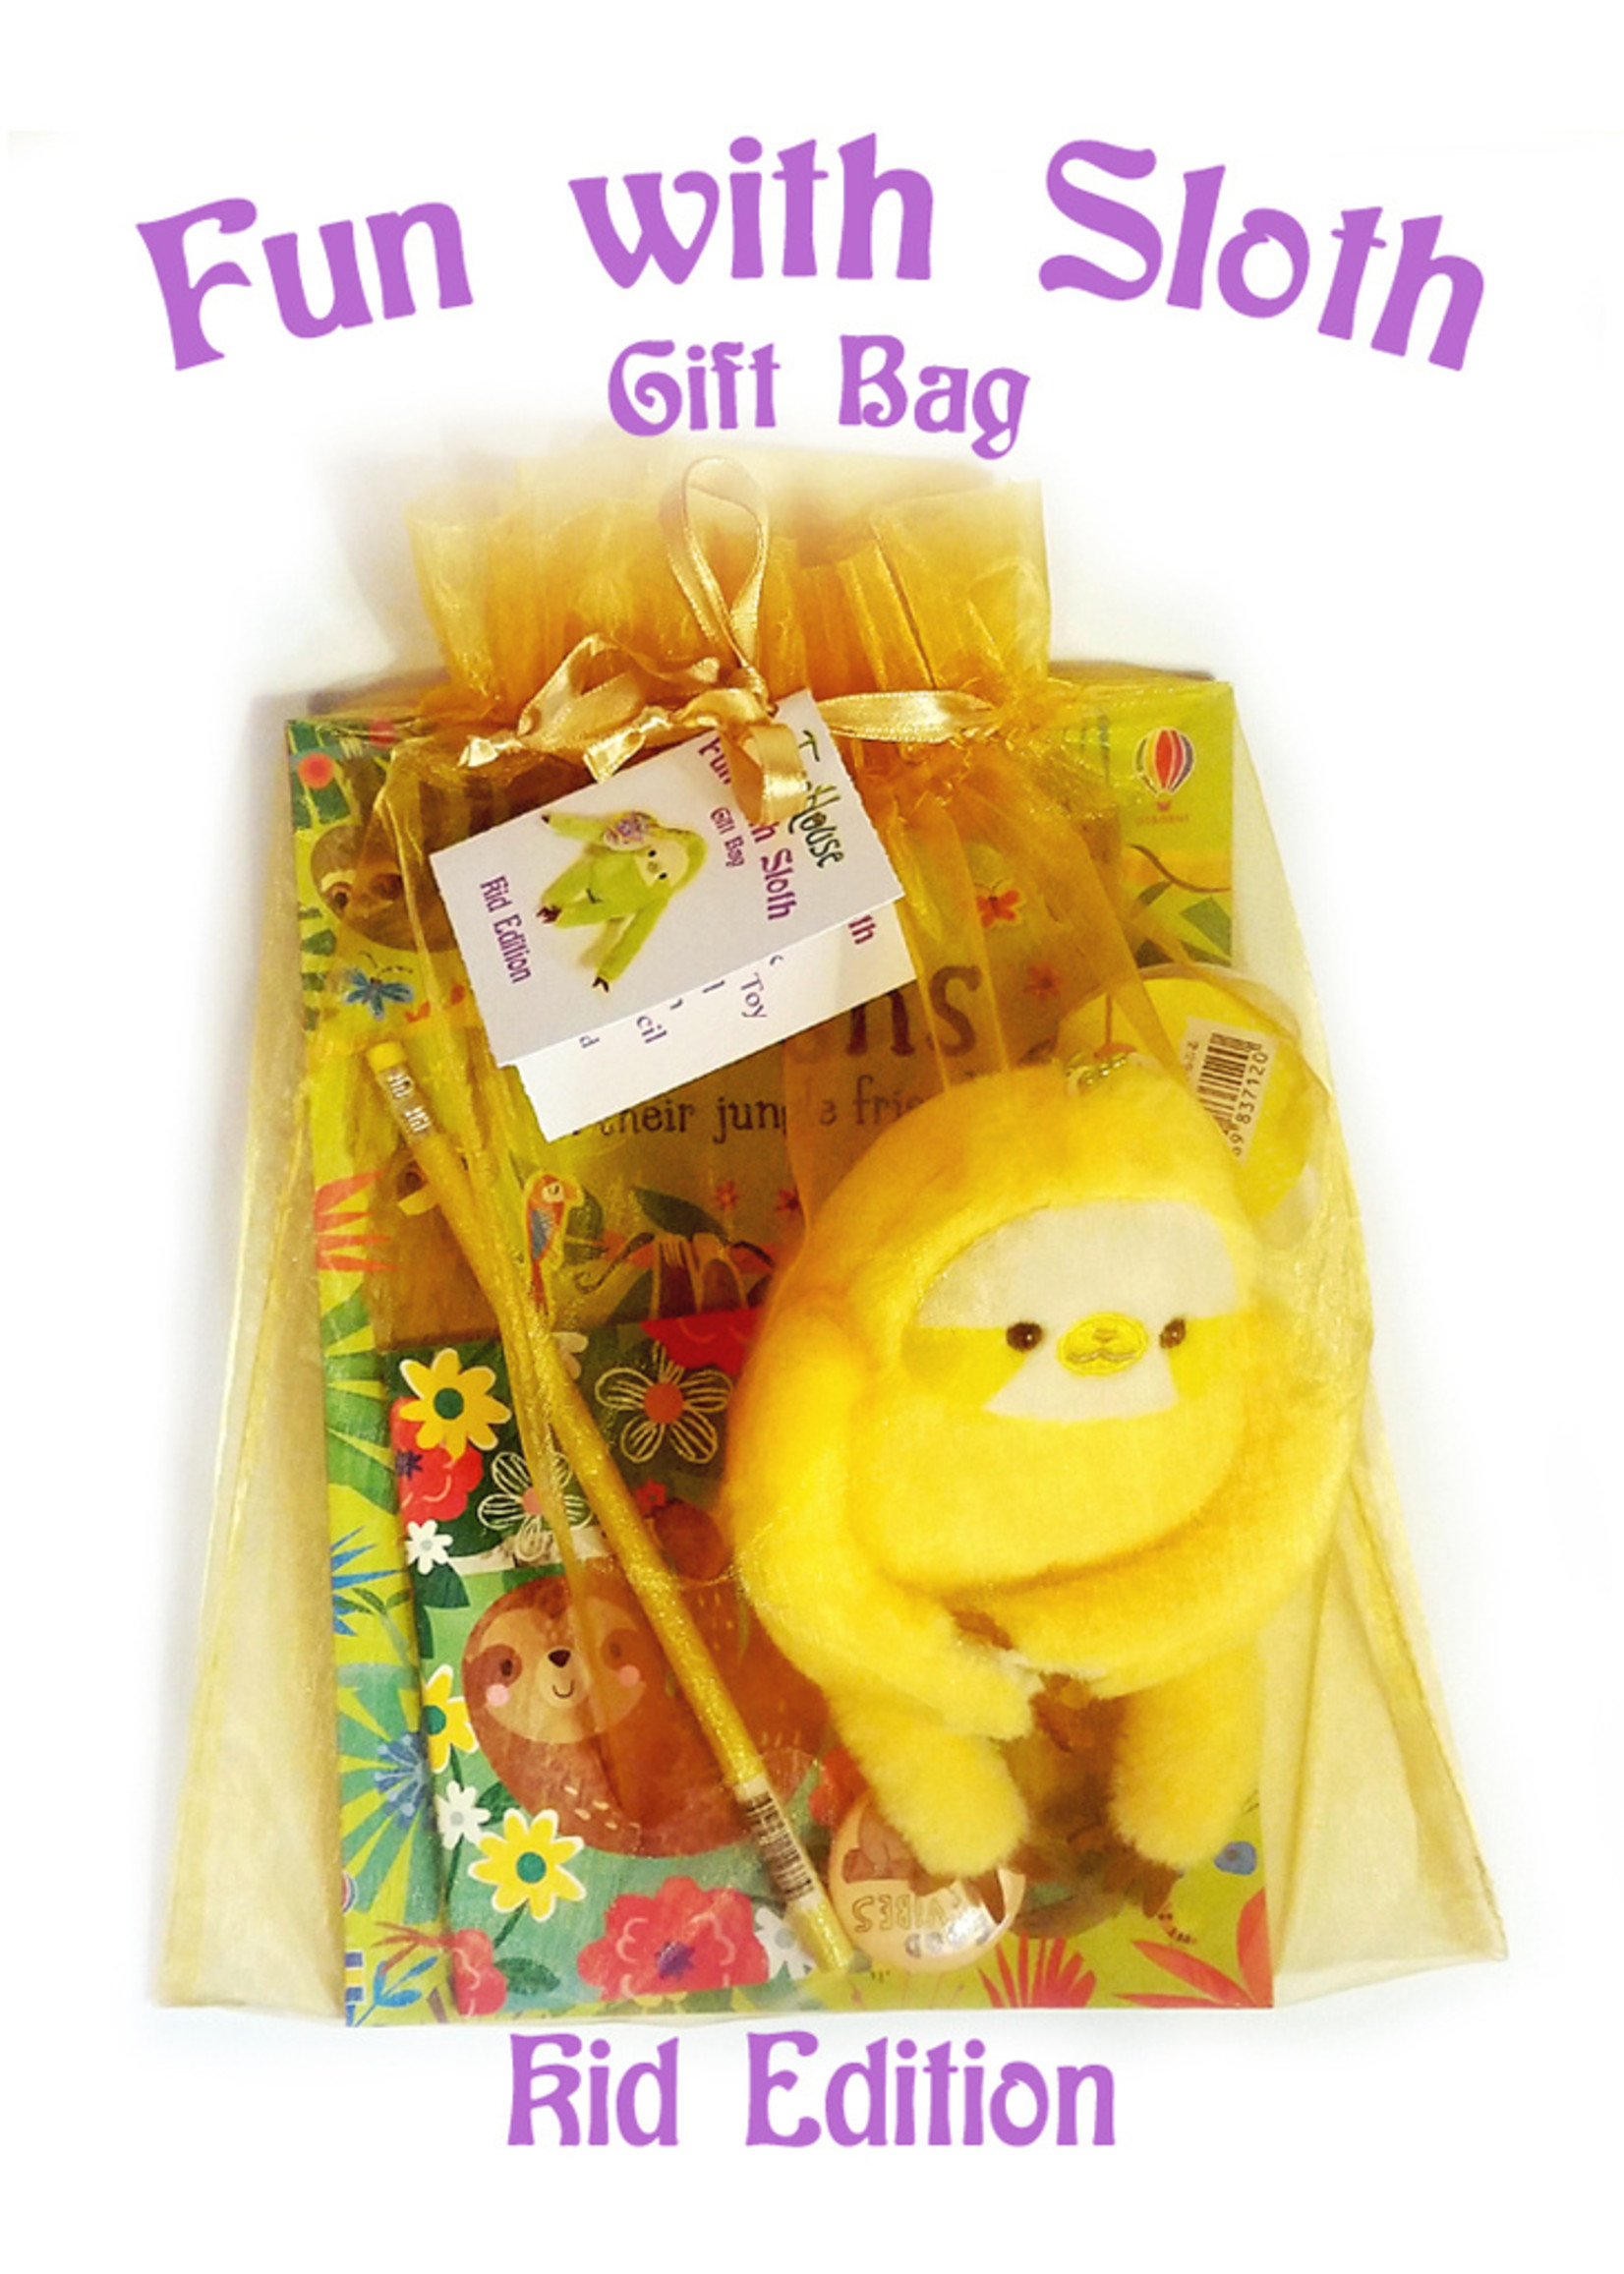 Fun with Sloth Gift Bag, Kid Edition